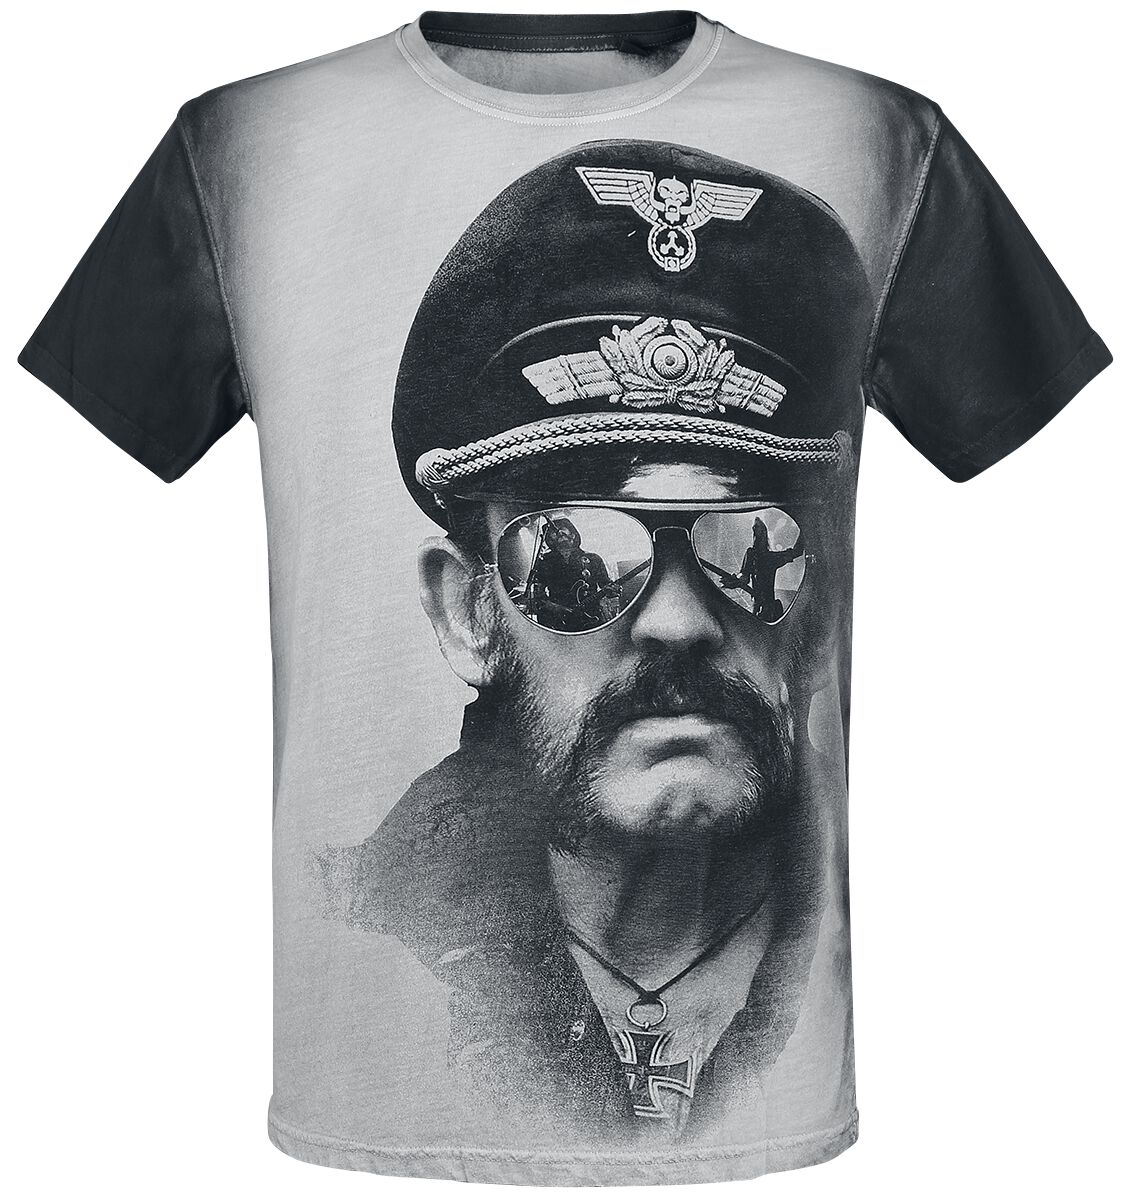 Lemmy T-Shirt - Kilmister Side - S bis XXL - für Männer - Größe M - altweiß/grau  - Lizenziertes Merchandise!